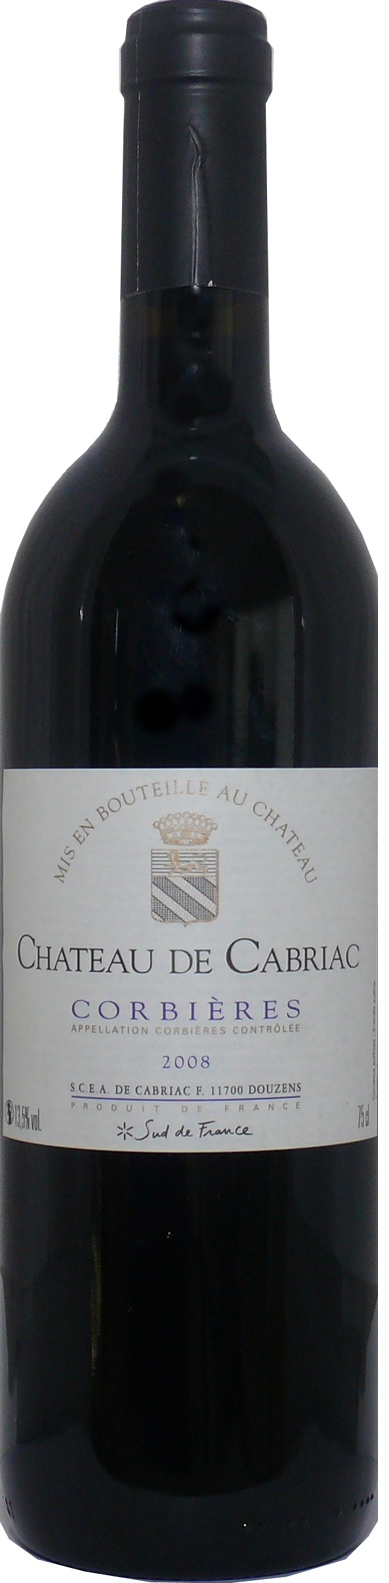 Château de Cabriac | Corbieres rot